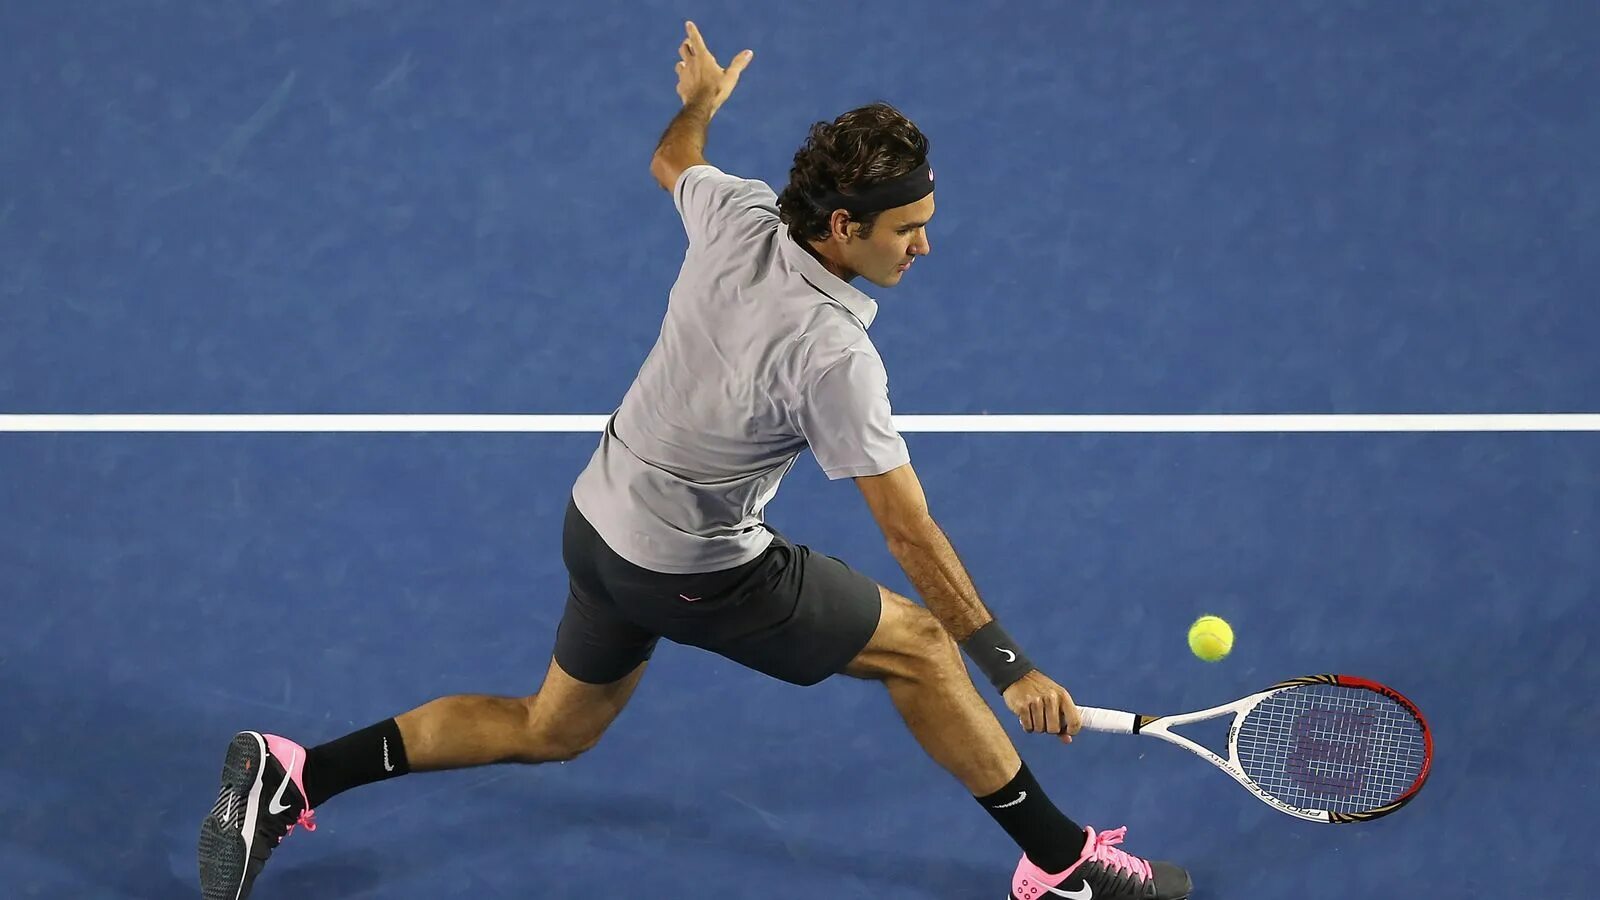 Удар в теннисе сканворд. Бэкхенд Роджер Федерер. Теннис удары Федерер. Теннисист в прыжке. Теннисист со спины.